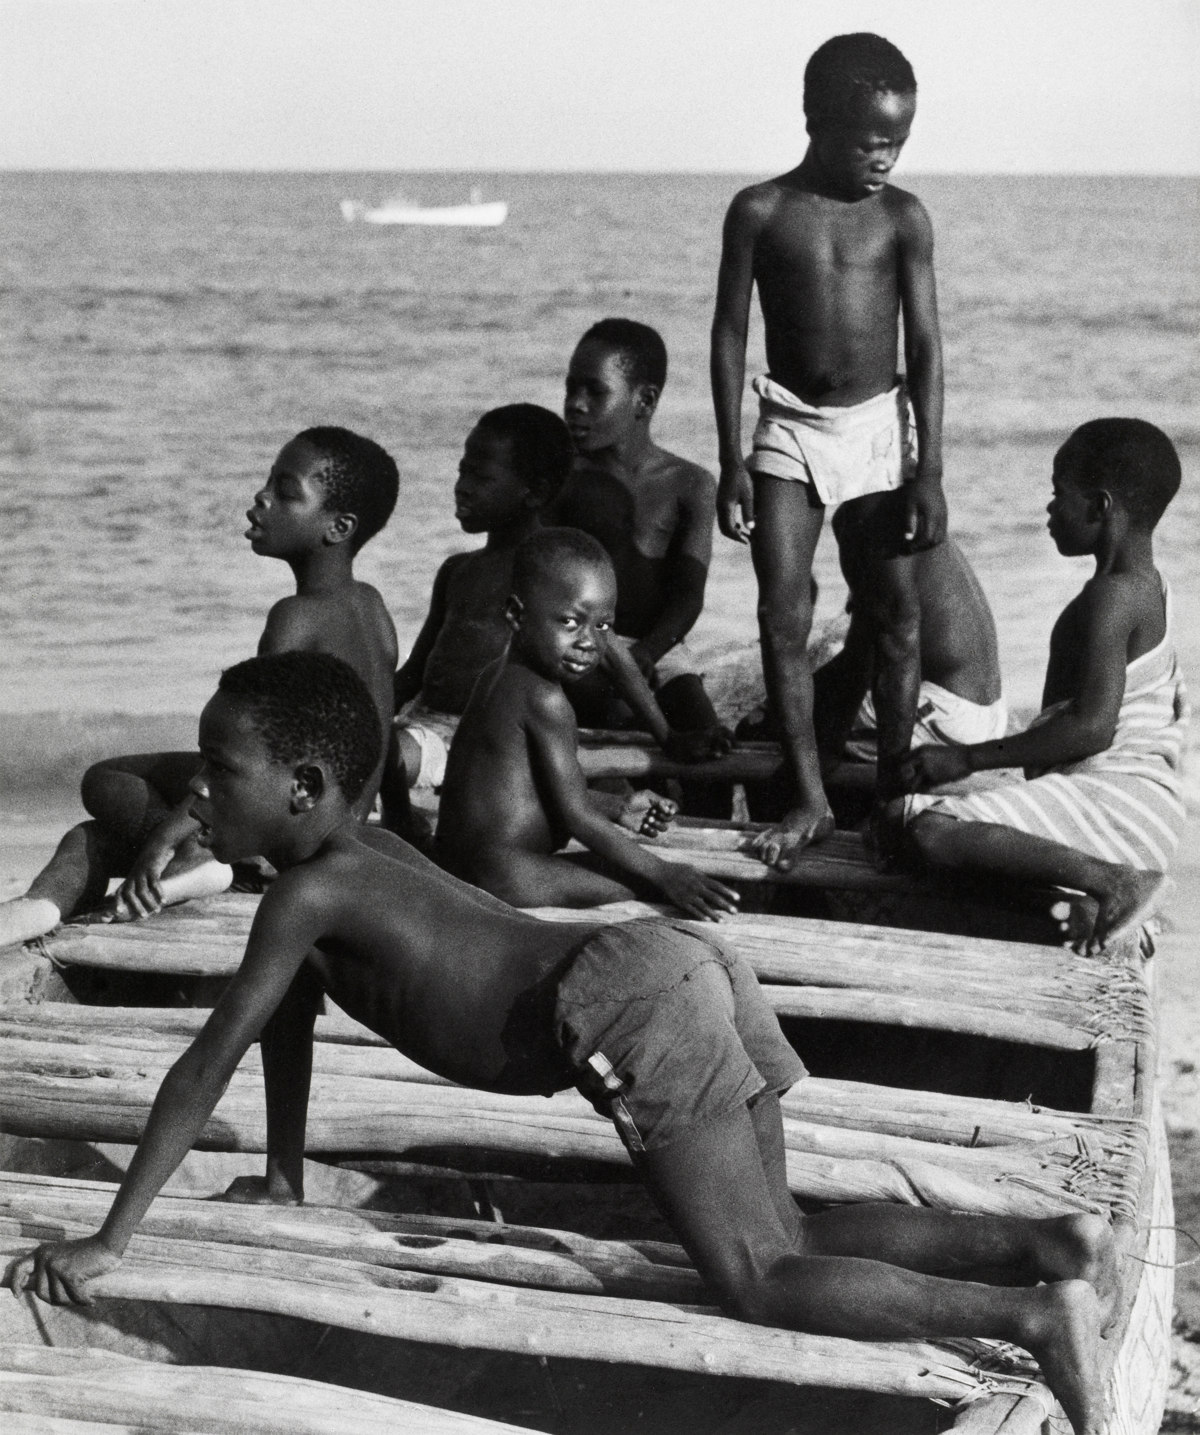 Boys at Cape Coast, Ghana [Chicos en Cape Coast, Ghana] © Aperture Foundation, Inc., Paul Strand Archive © COLECCIONES Fundación MAPFRE